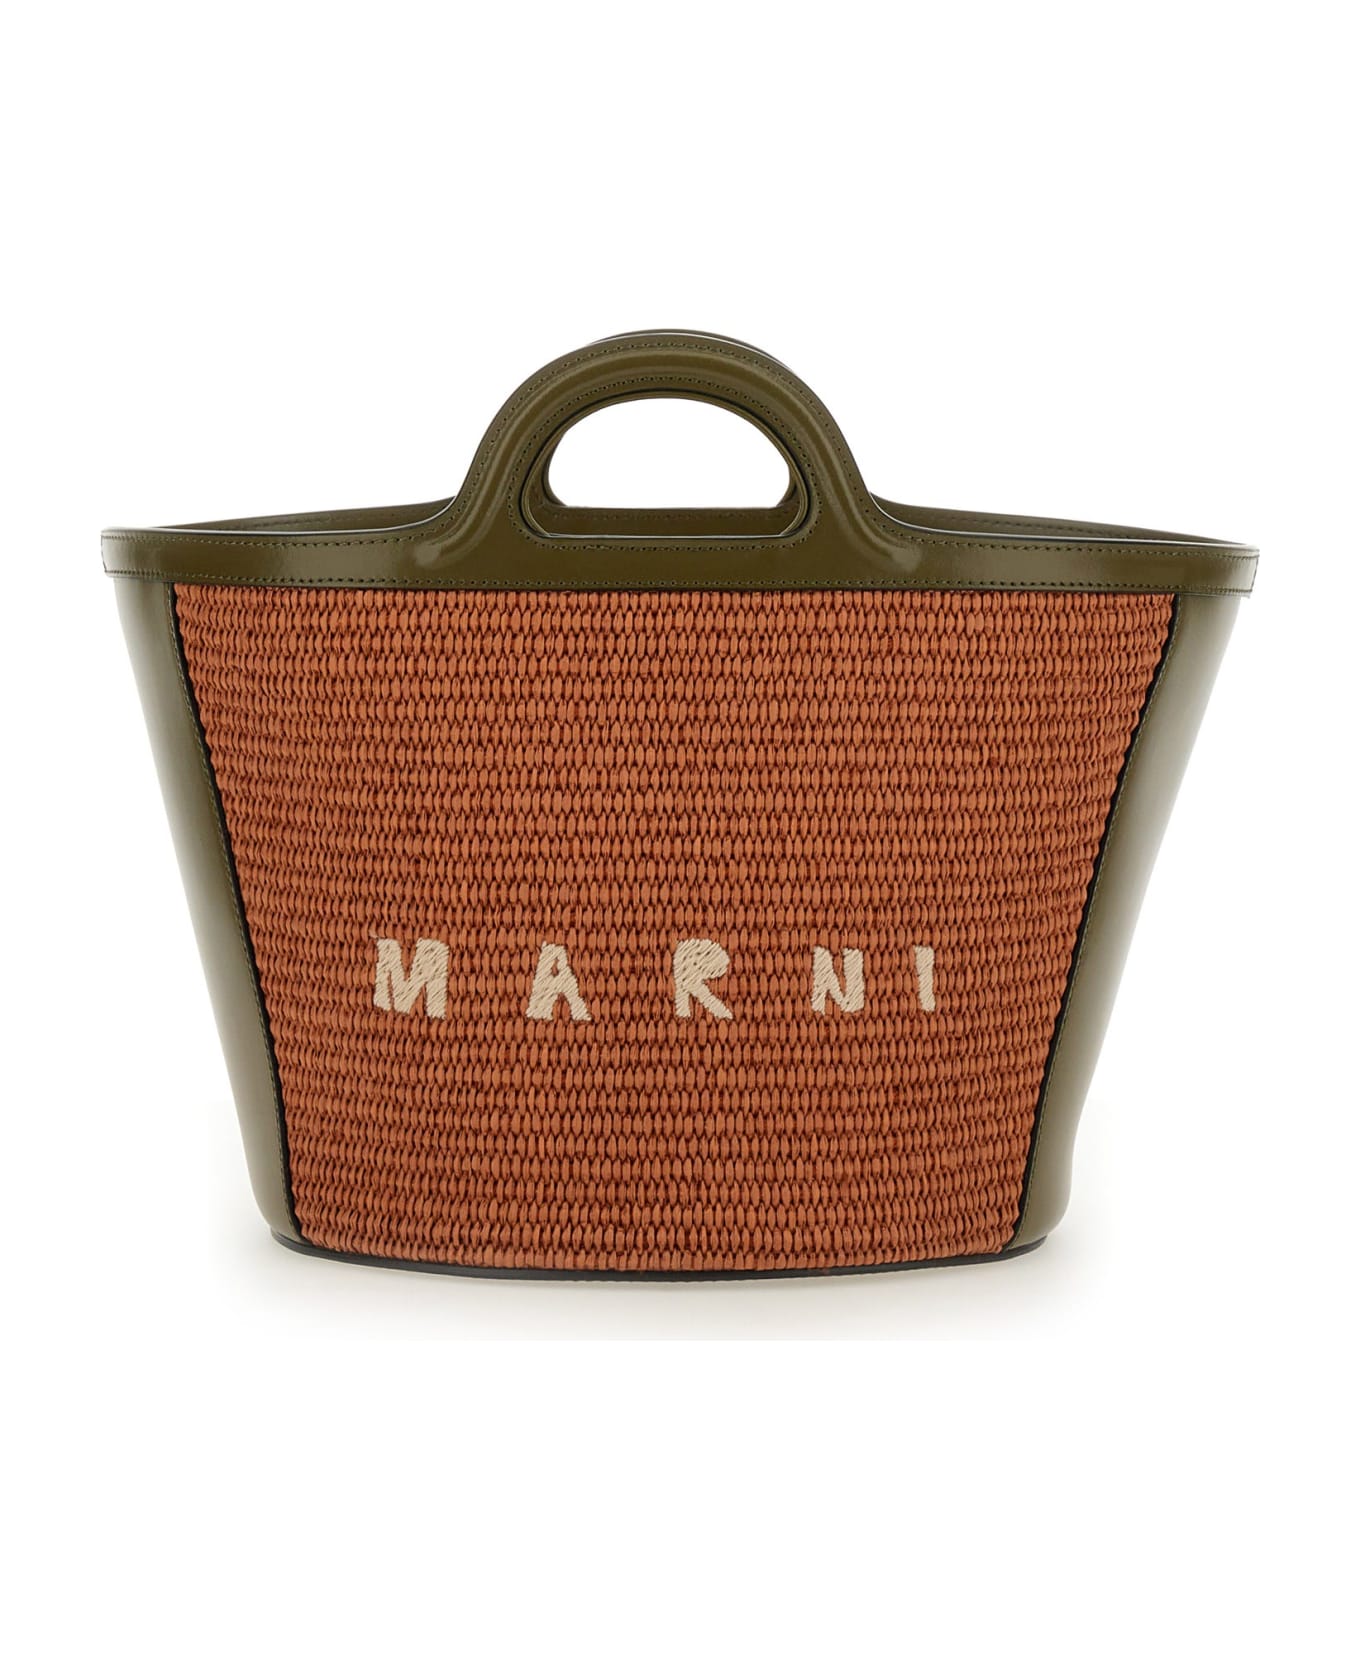 Marni Tropicalia Small Bag - Brown